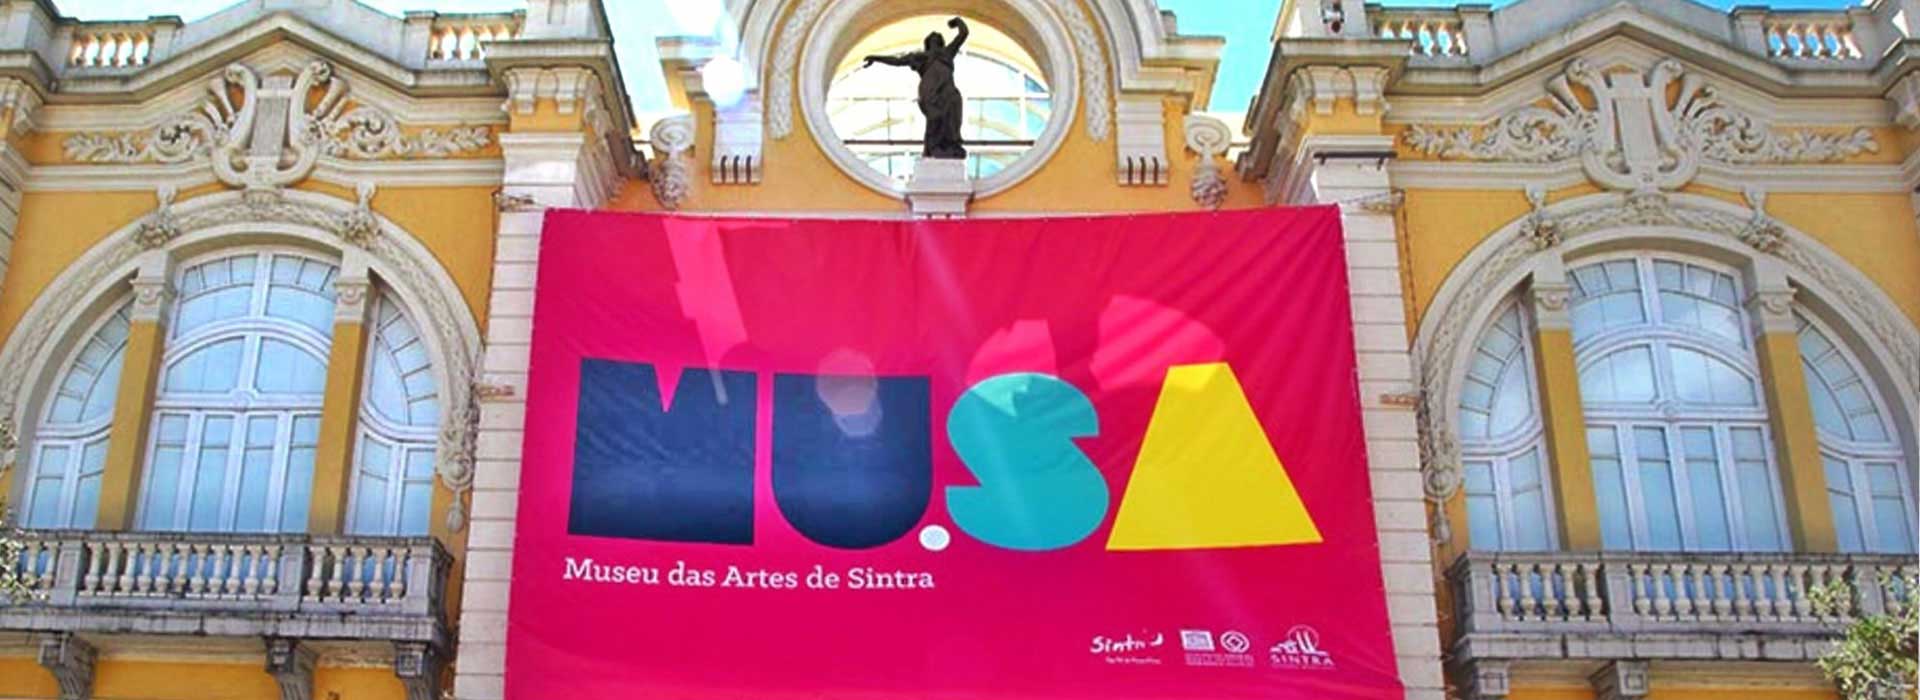 MU.SA - Sintra MUSEUM OF ART (MUSEU DAS ARTES DE Sintra)